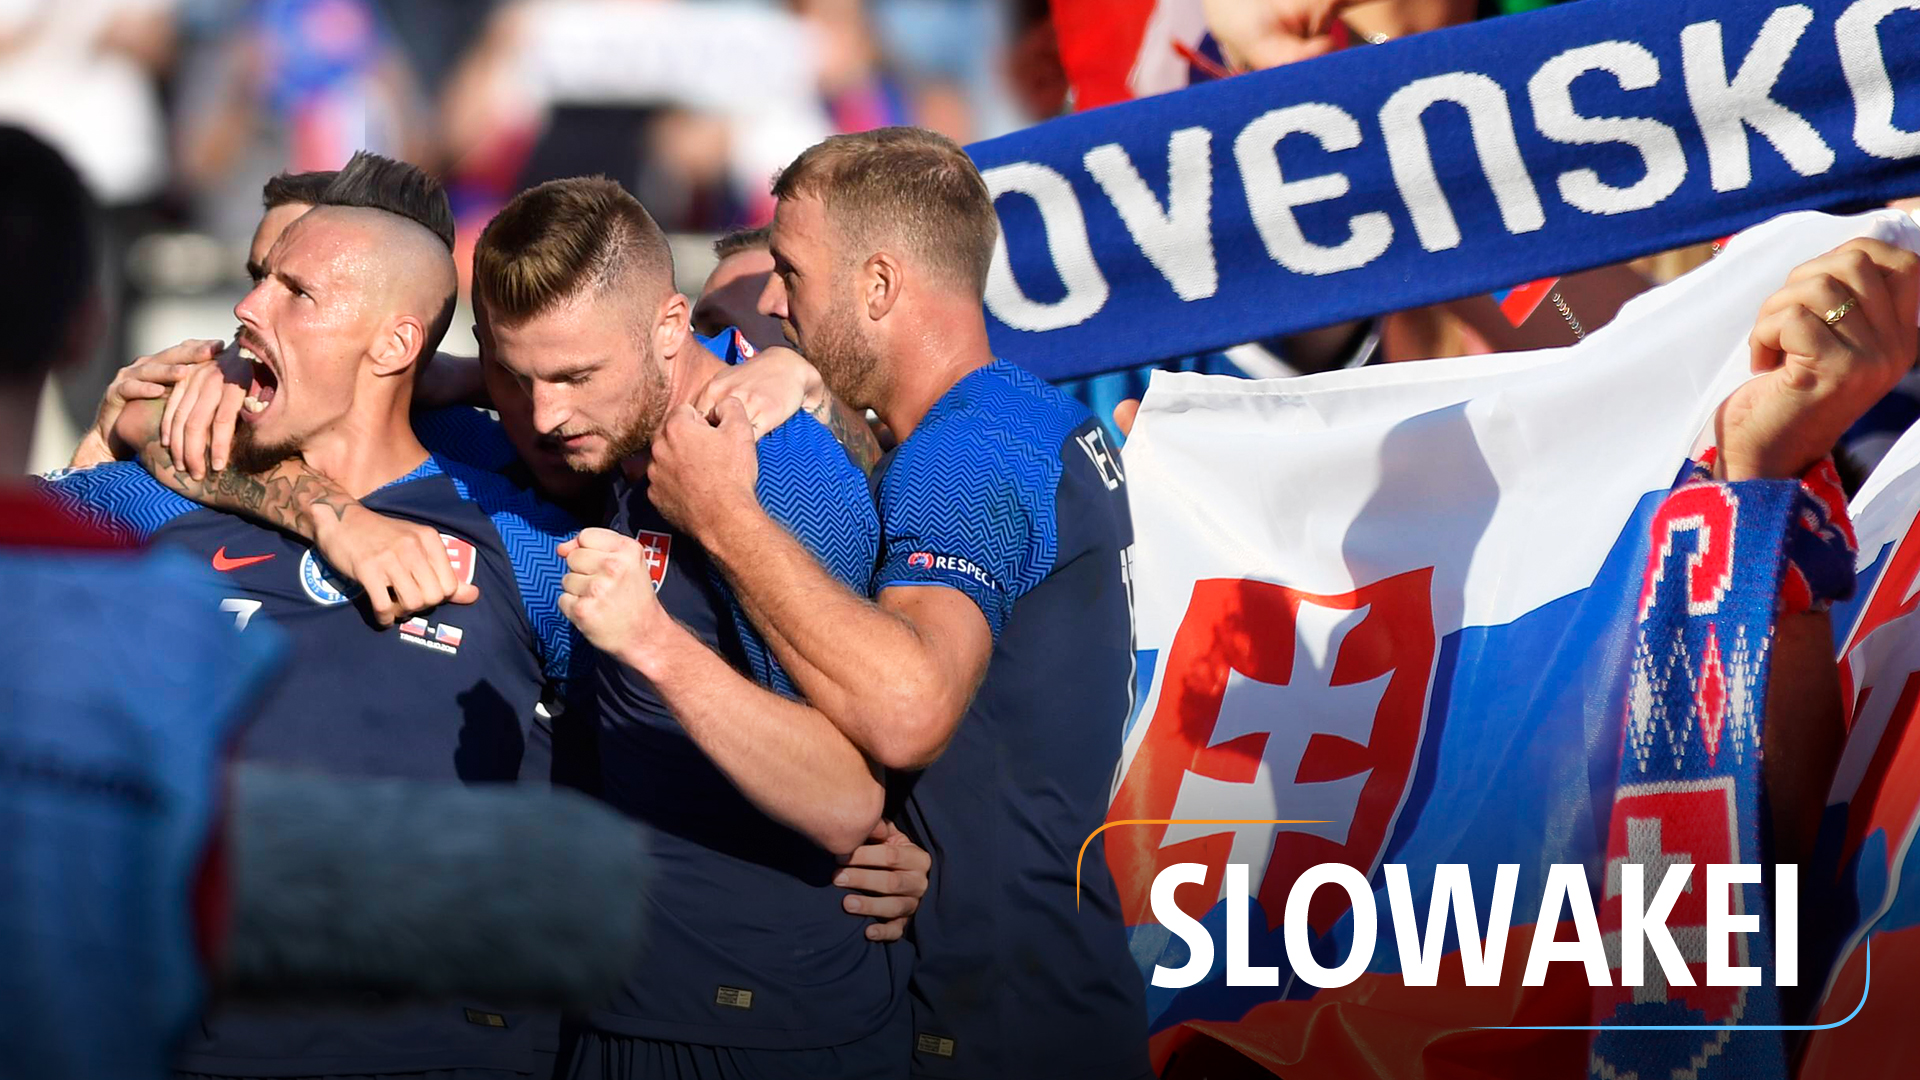 Teaserbild für die Nationalmannschaft: Slowakei